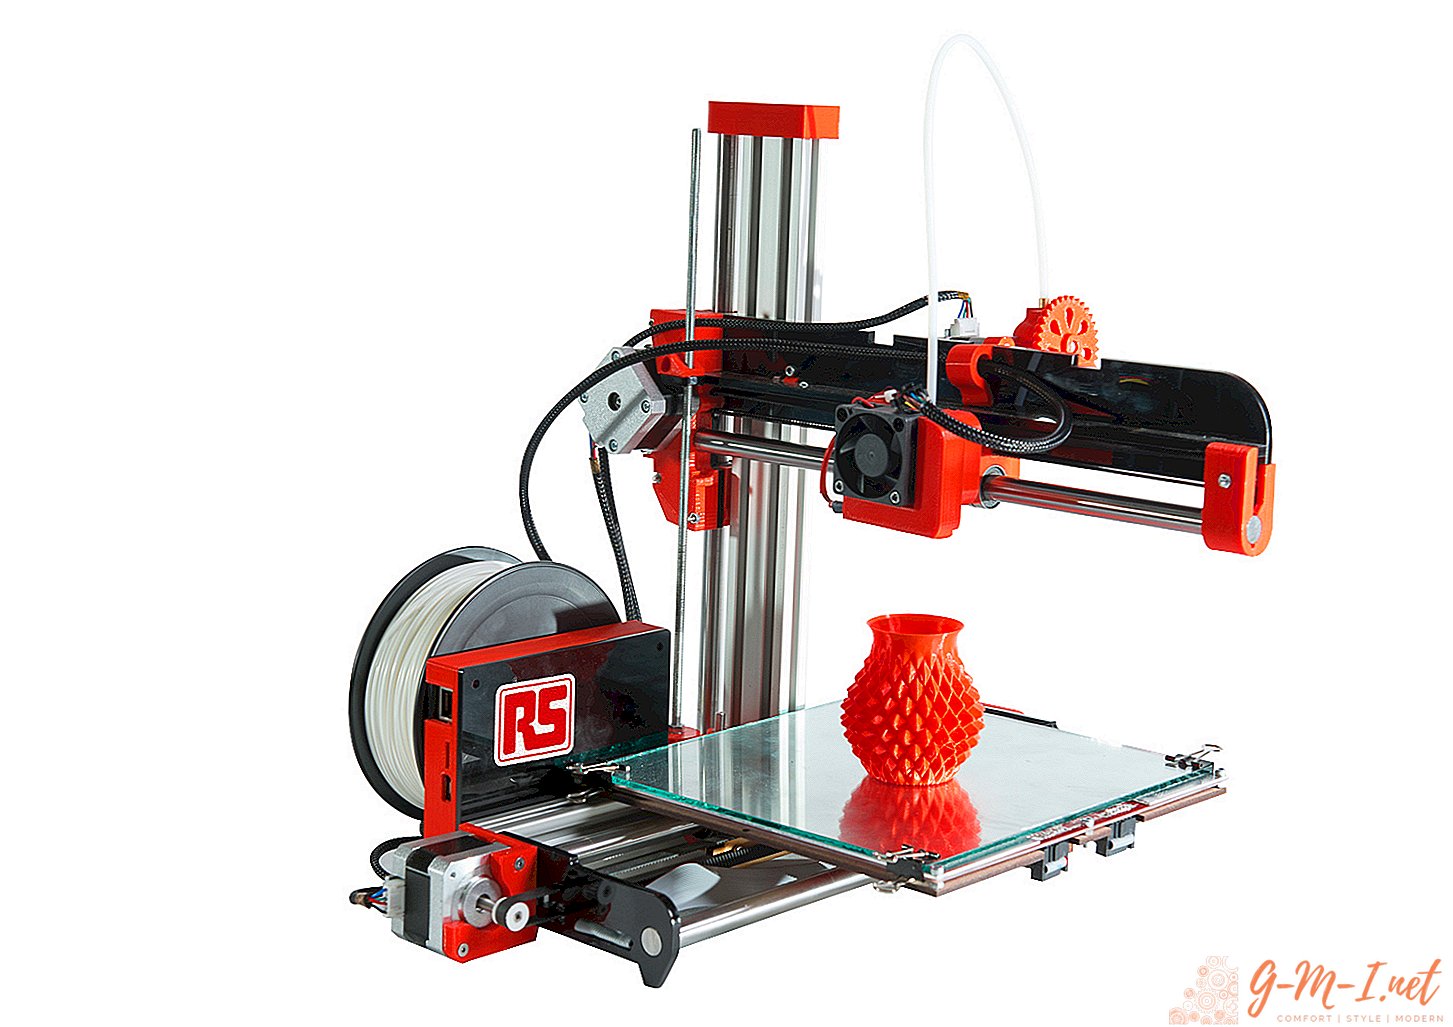 Como funciona uma impressora 3D?